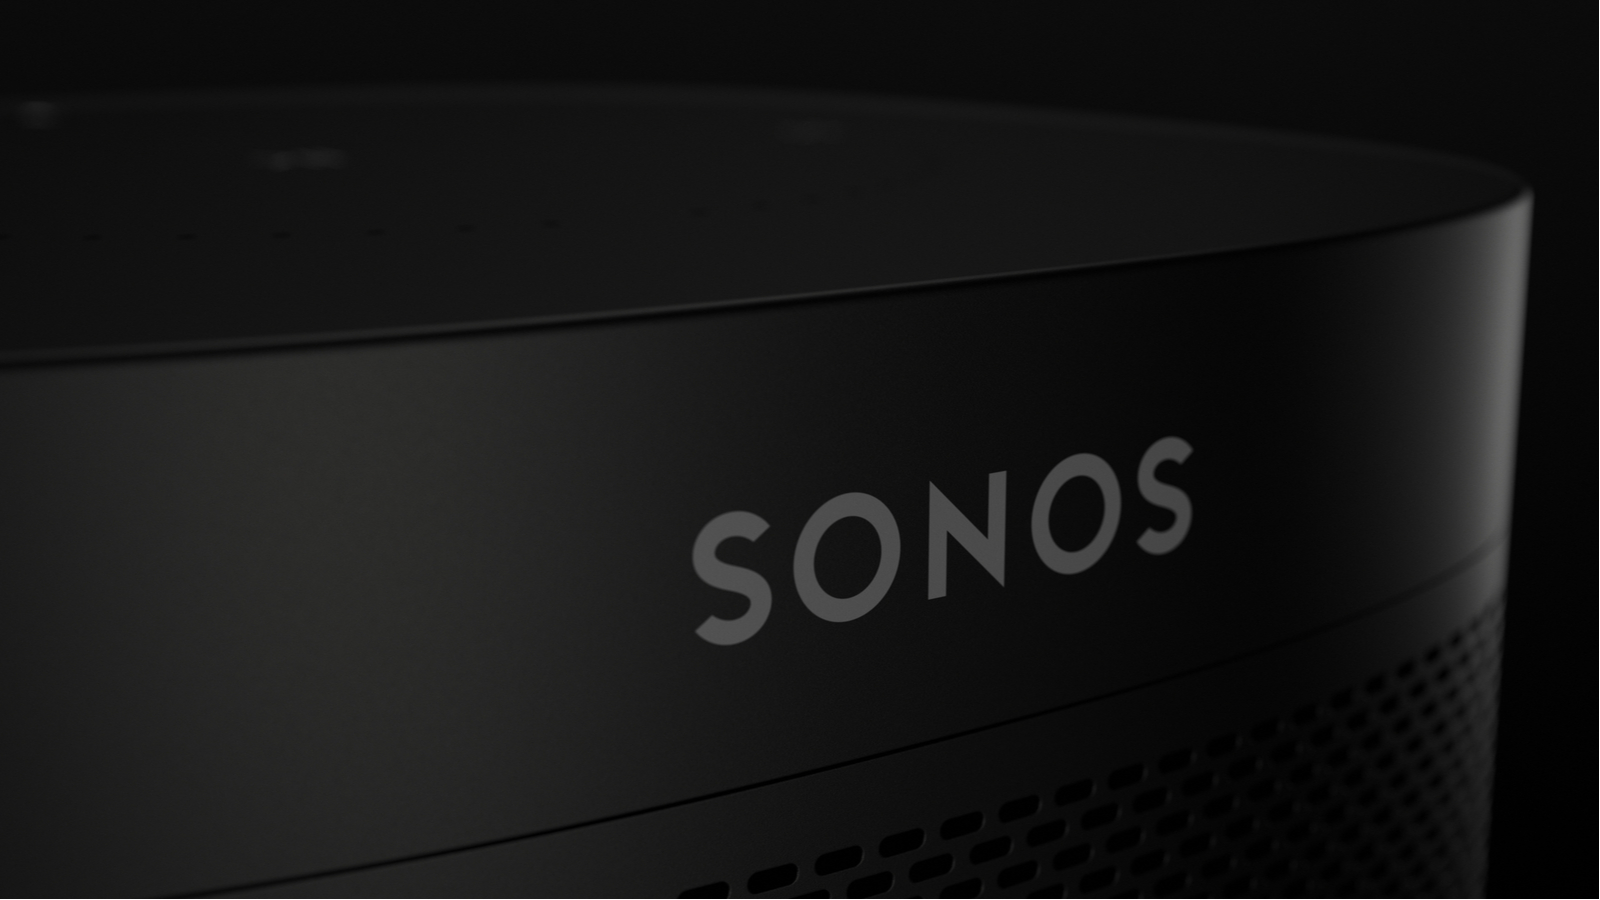 Sonos lance son propre service de radio en streaming